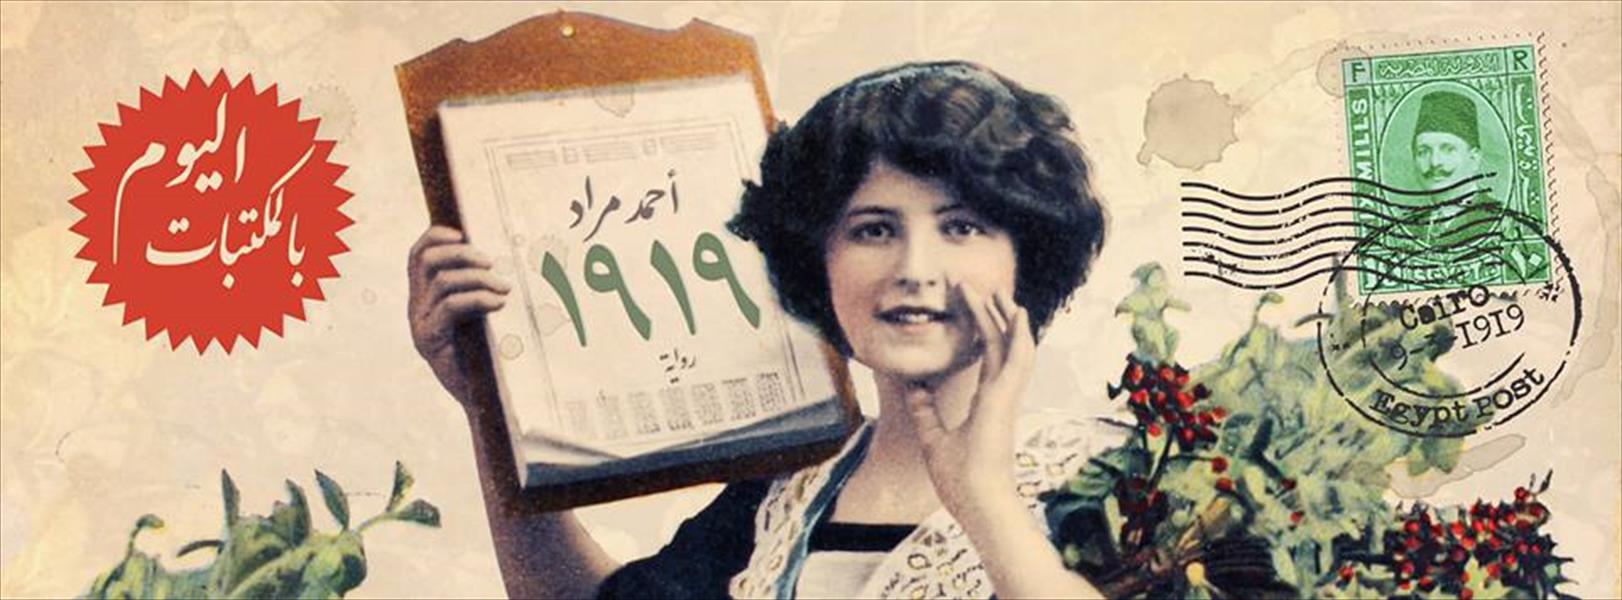 صدور رواية "1919" للكاتب أحمد مراد